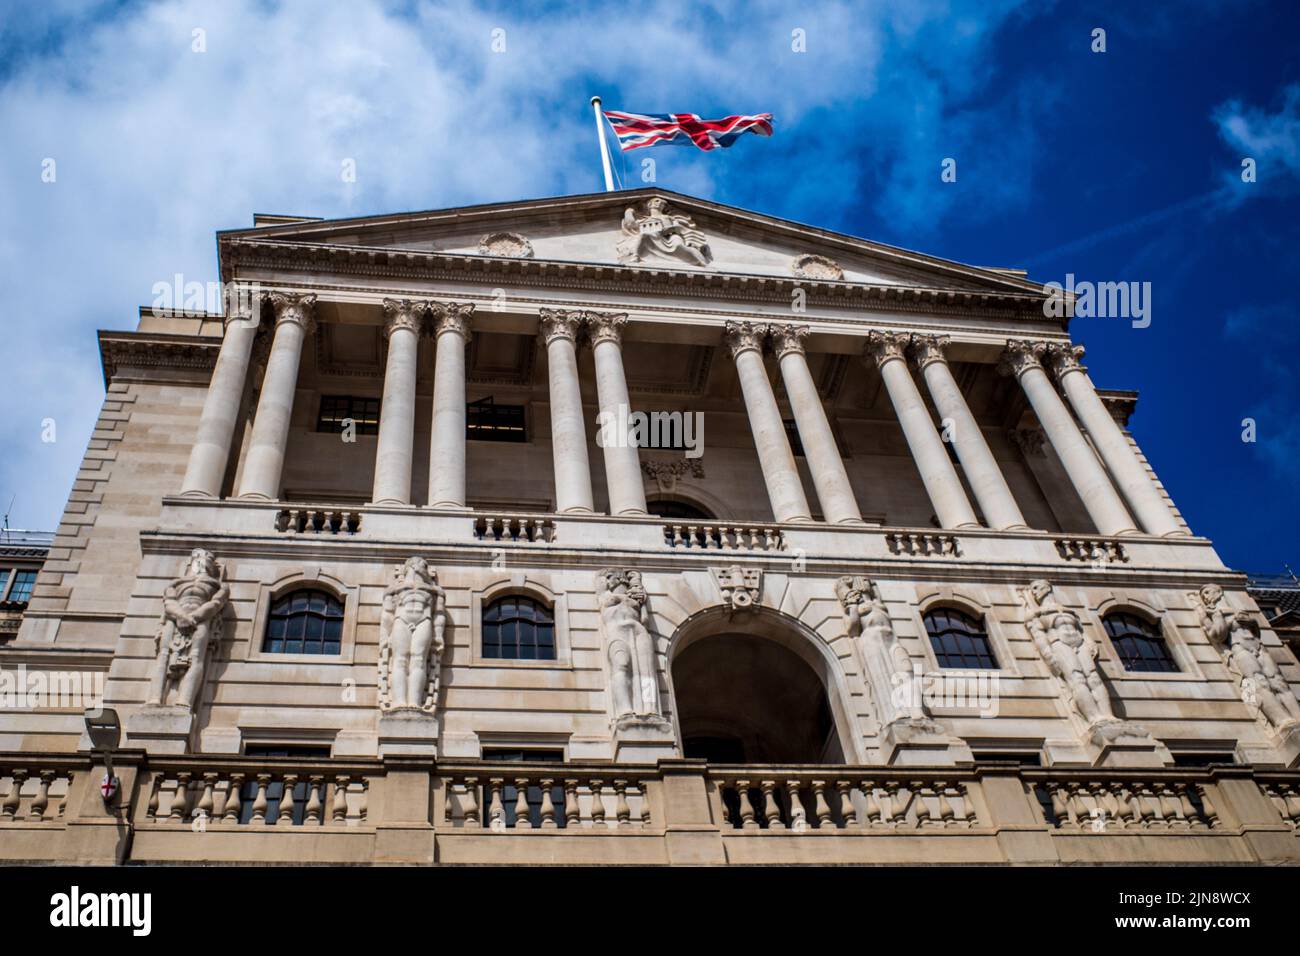 Sede del Banco de Inglaterra en Londres. El Banco Central del Reino Unido, el Banco de Inglaterra Sede Threadneedle St en la City of London Financial District. Foto de stock